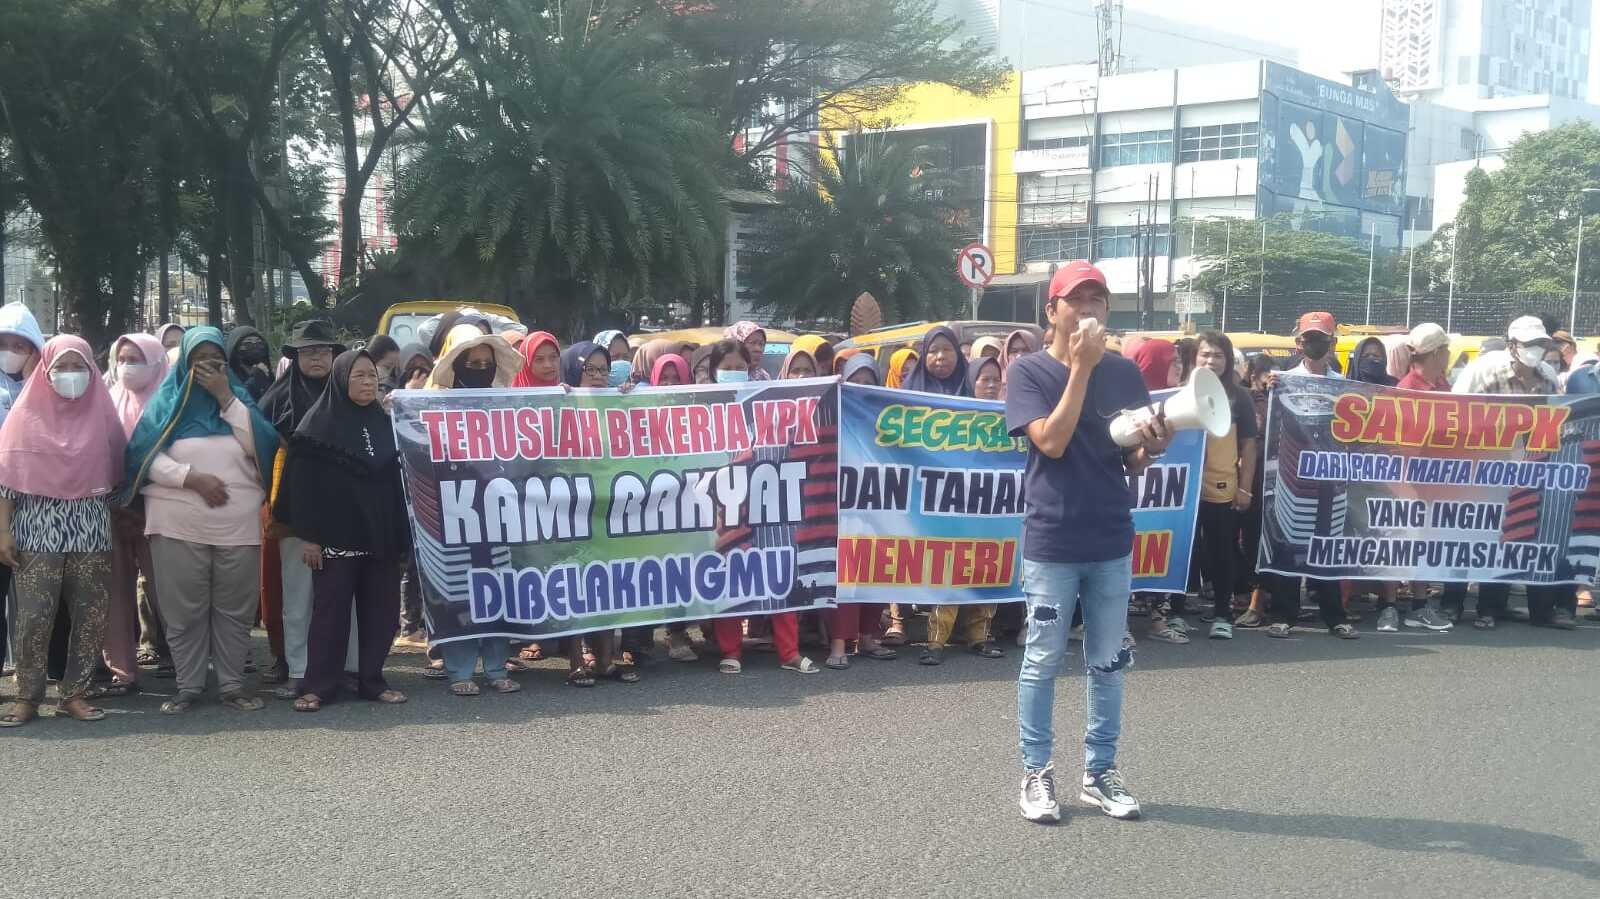 Dukung KPK, MMK Gelar aksi Damai Di DPRD Sumsel Palembang